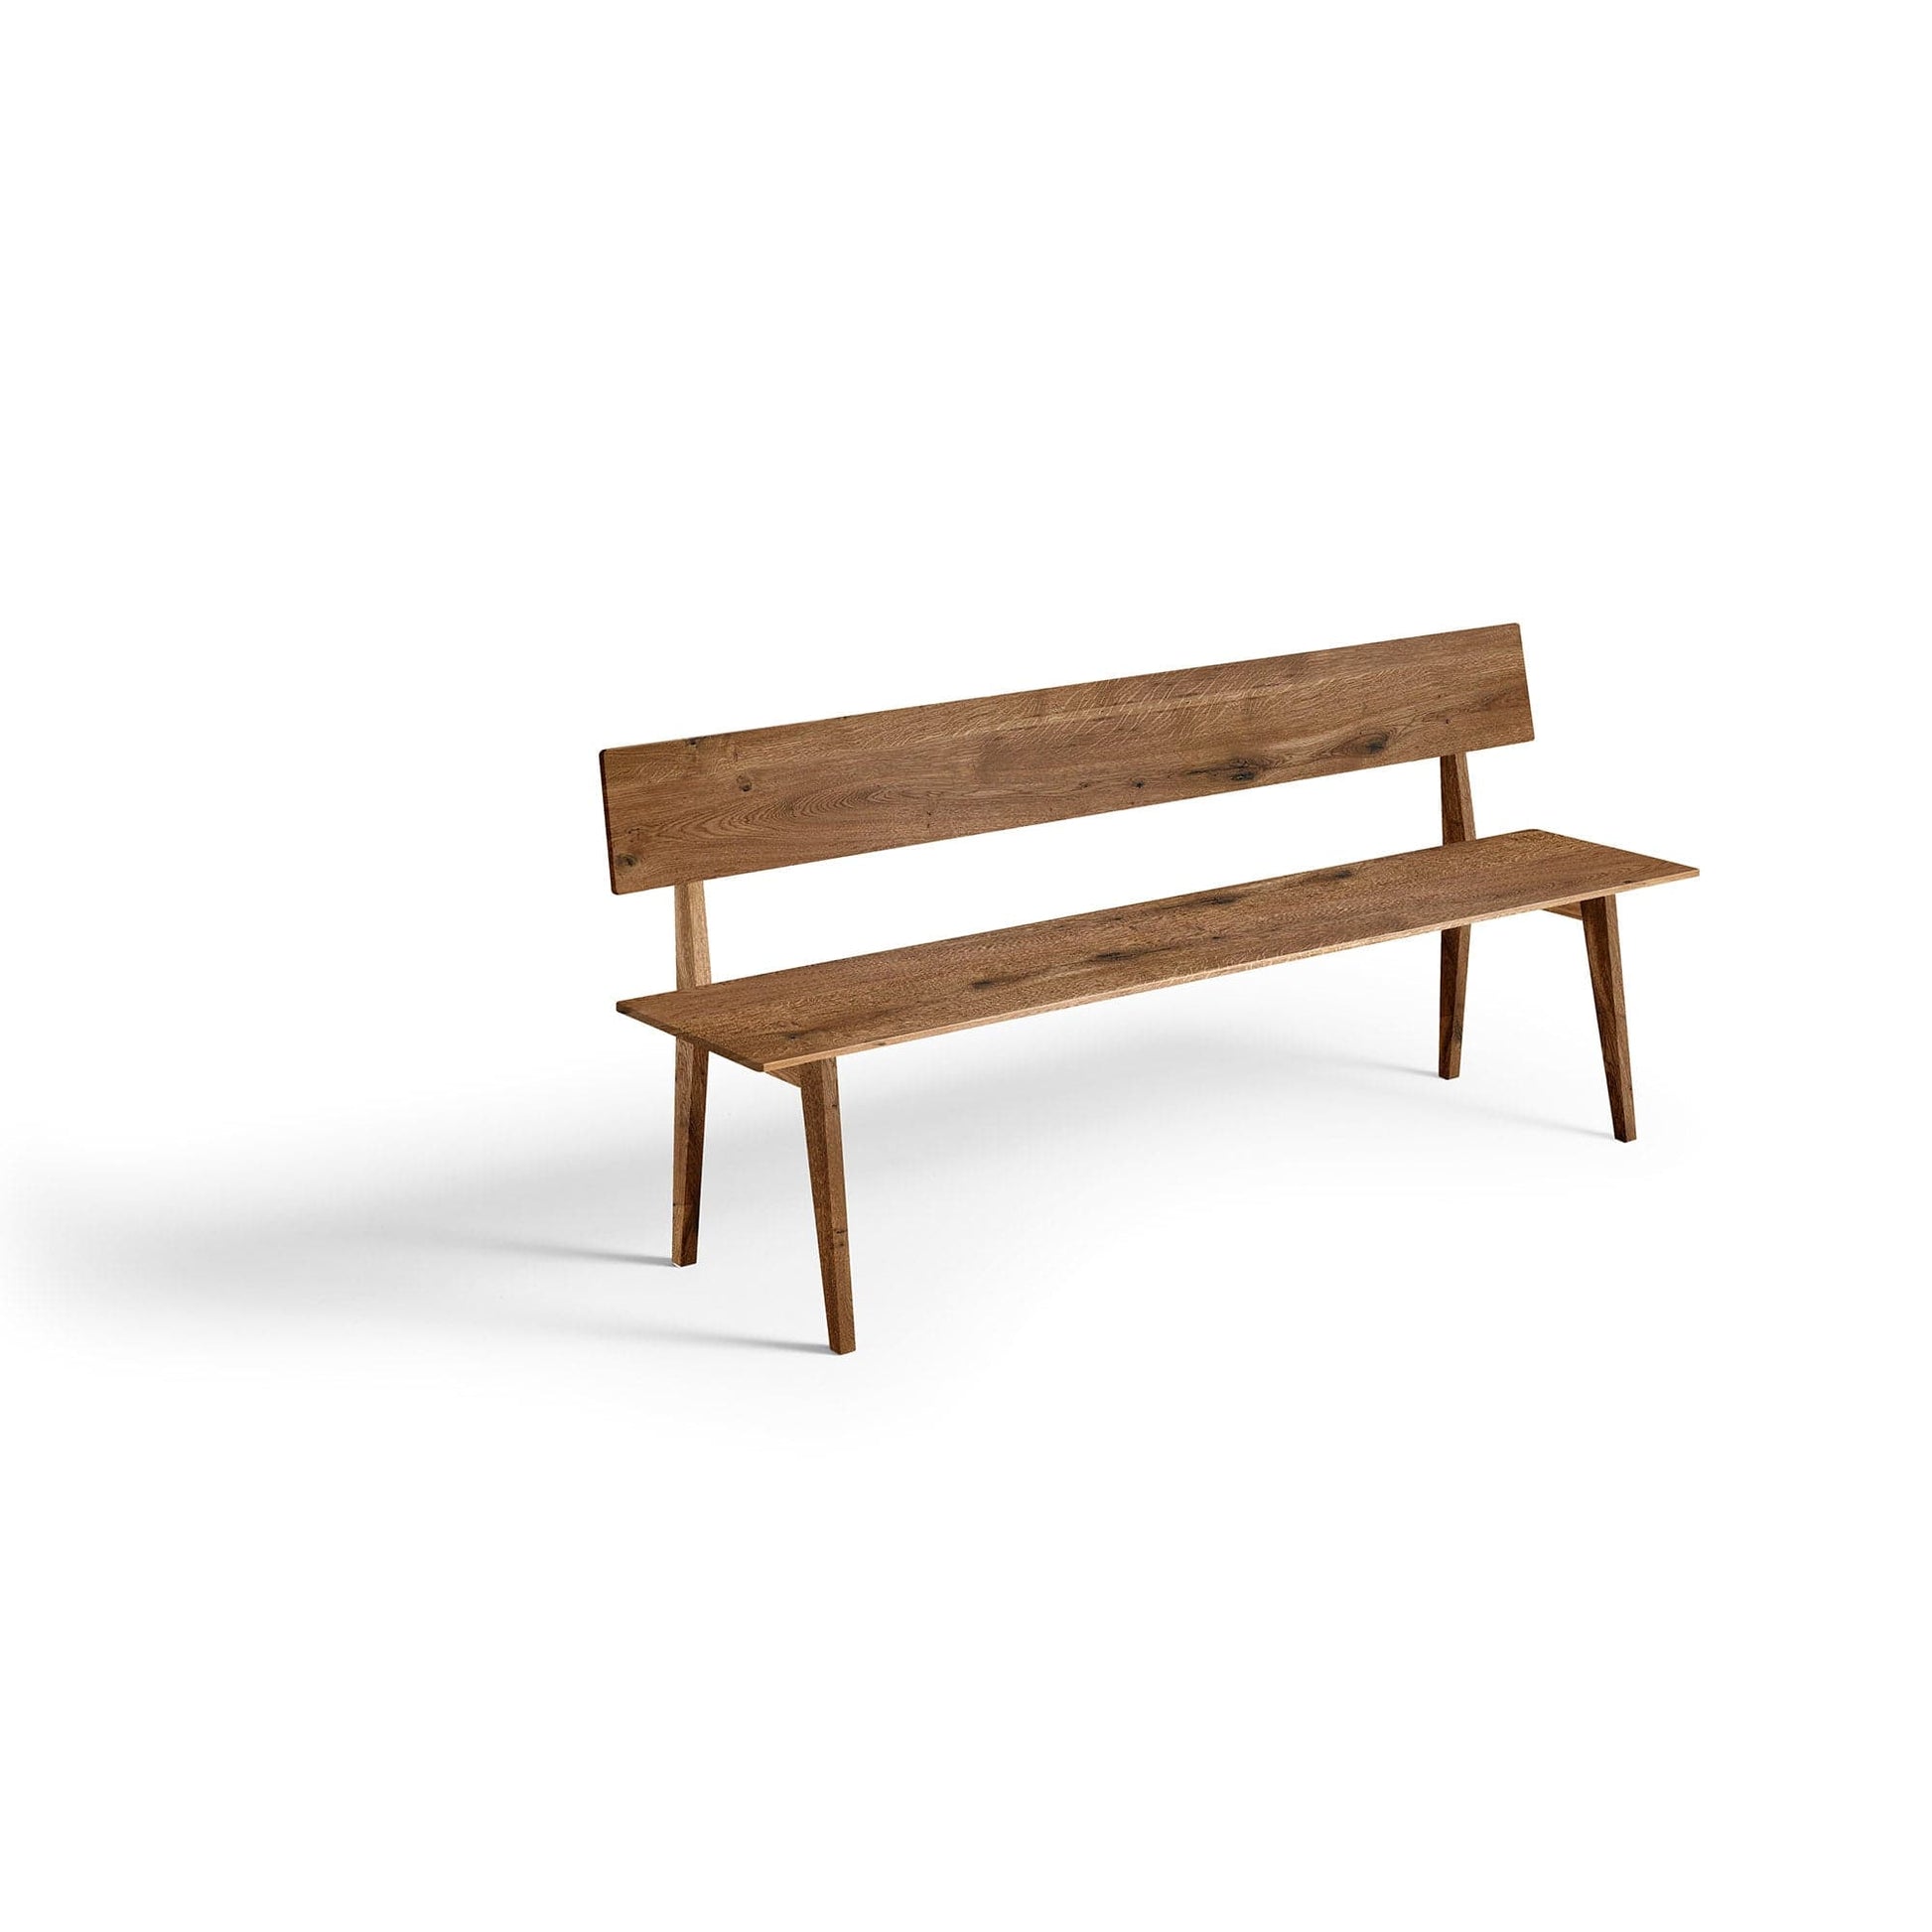 Leichte Bank aus Massivholz in modernem Design, ebenfalls aus unserer Manufaktur für hochwertige Möbel in höchster Qualität in Wildeiche massiv